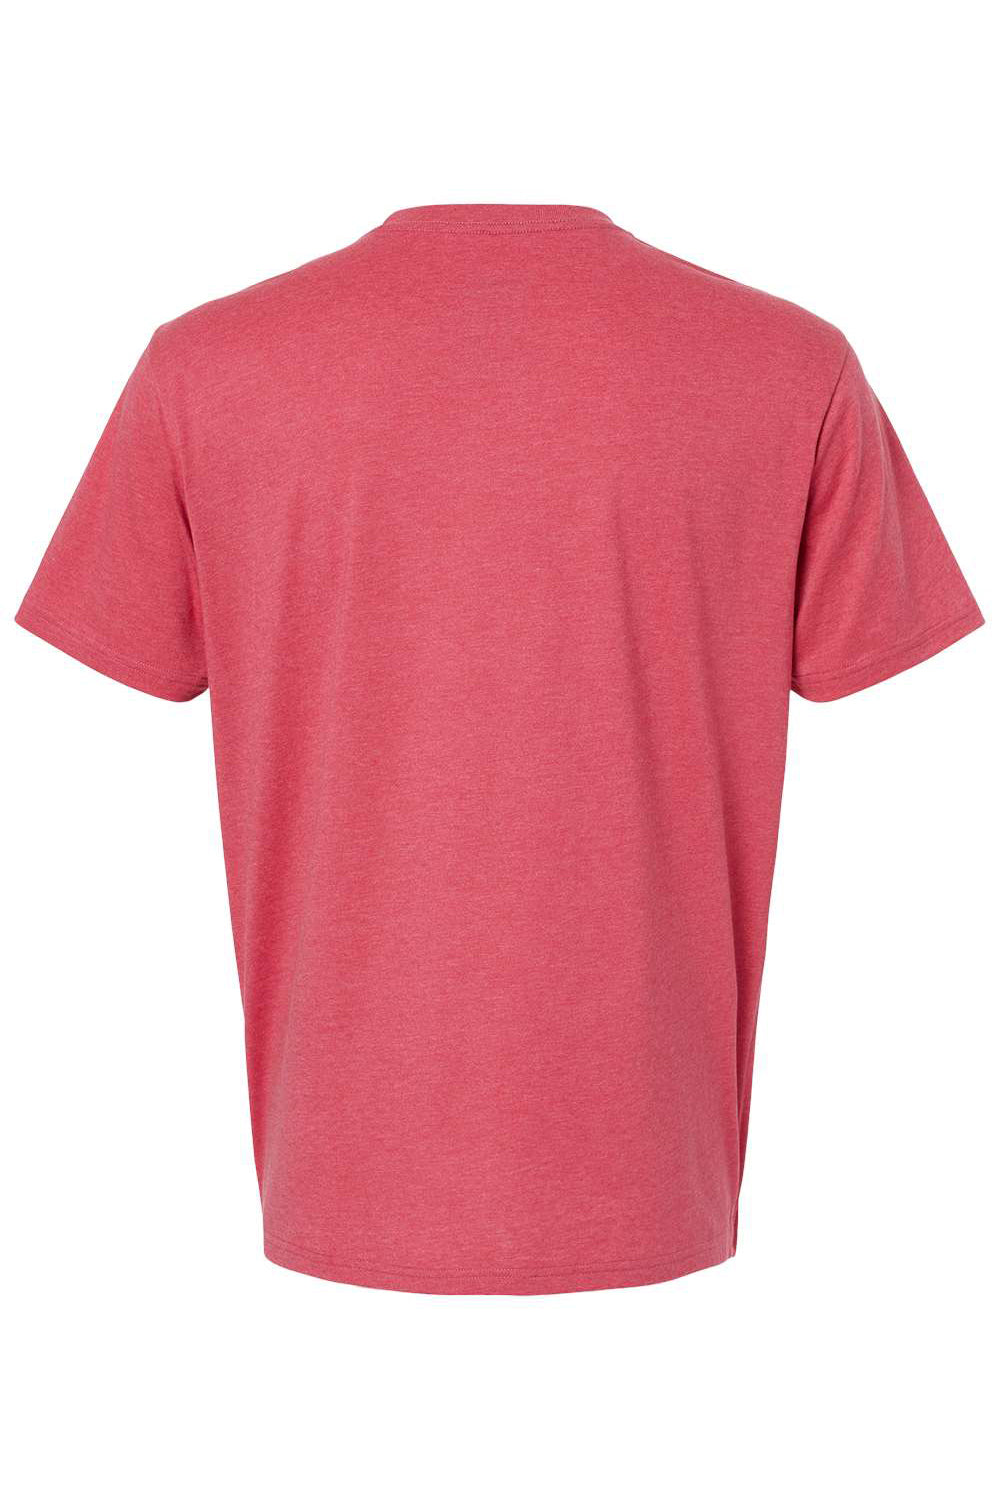 Kastlfel 2010 Mens RecycledSoft Short Sleve Crewneck T-Shirt Red Flat Back